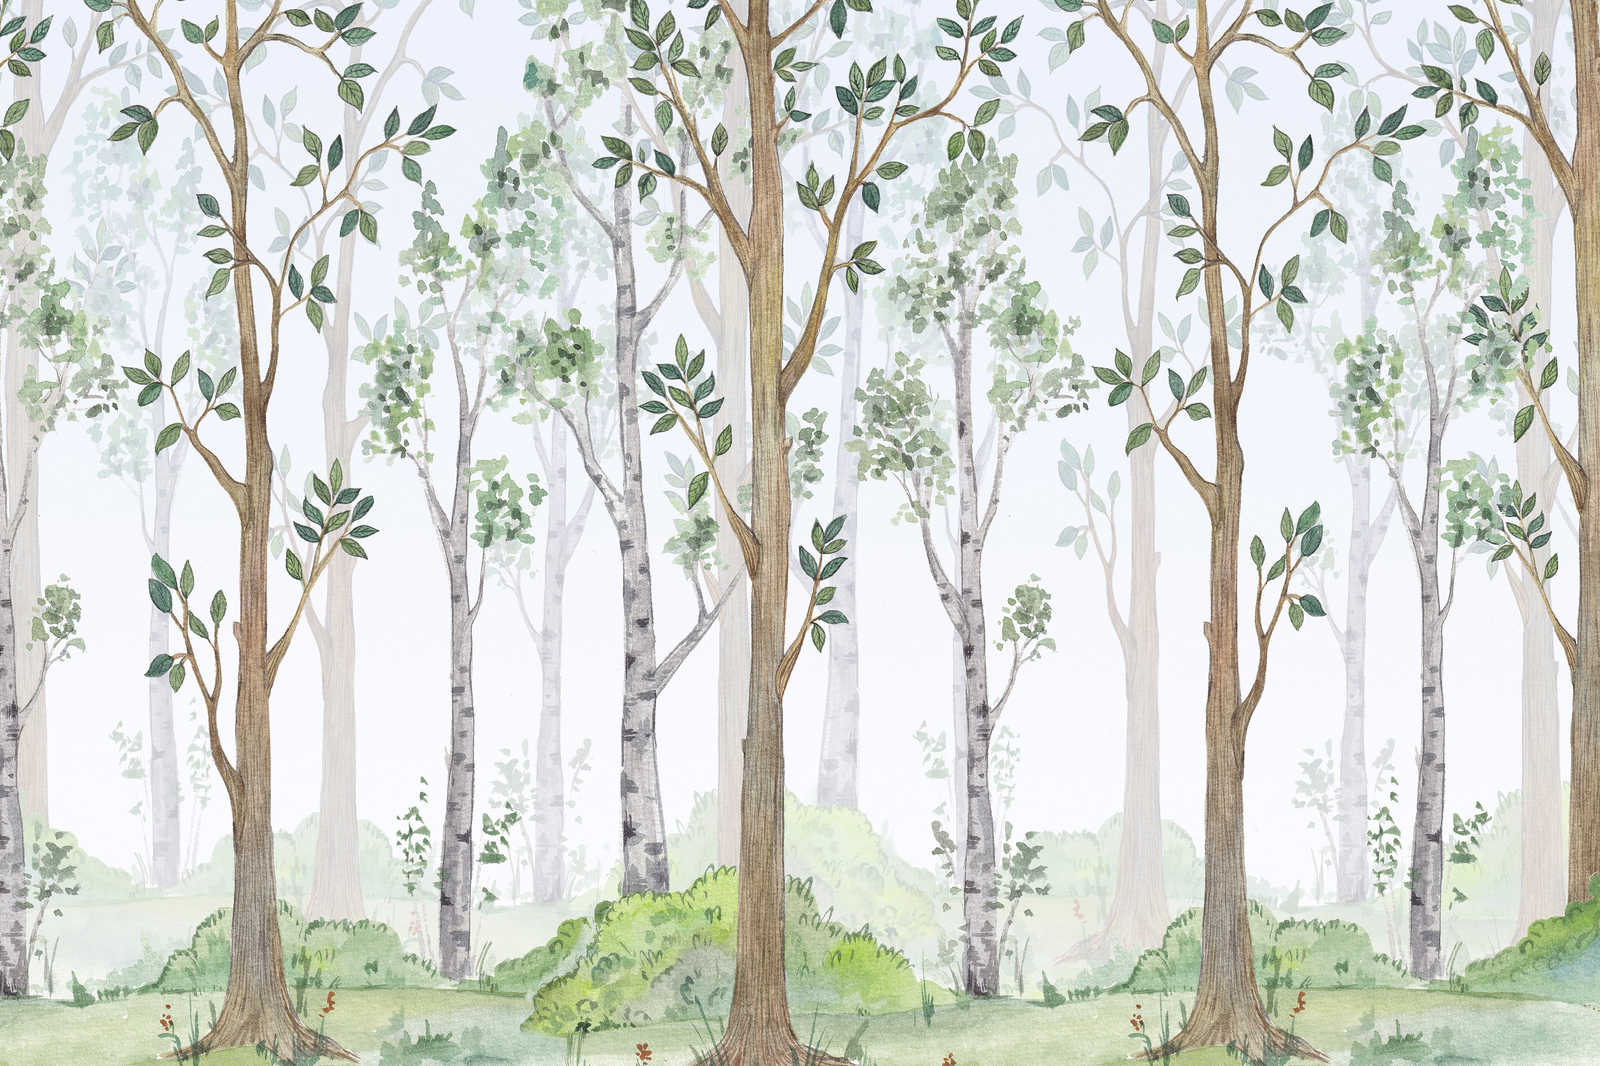             Leinwandbild mit gemaltem Wald für Kinderzimmer – 0,90 m x 0,60 m
        